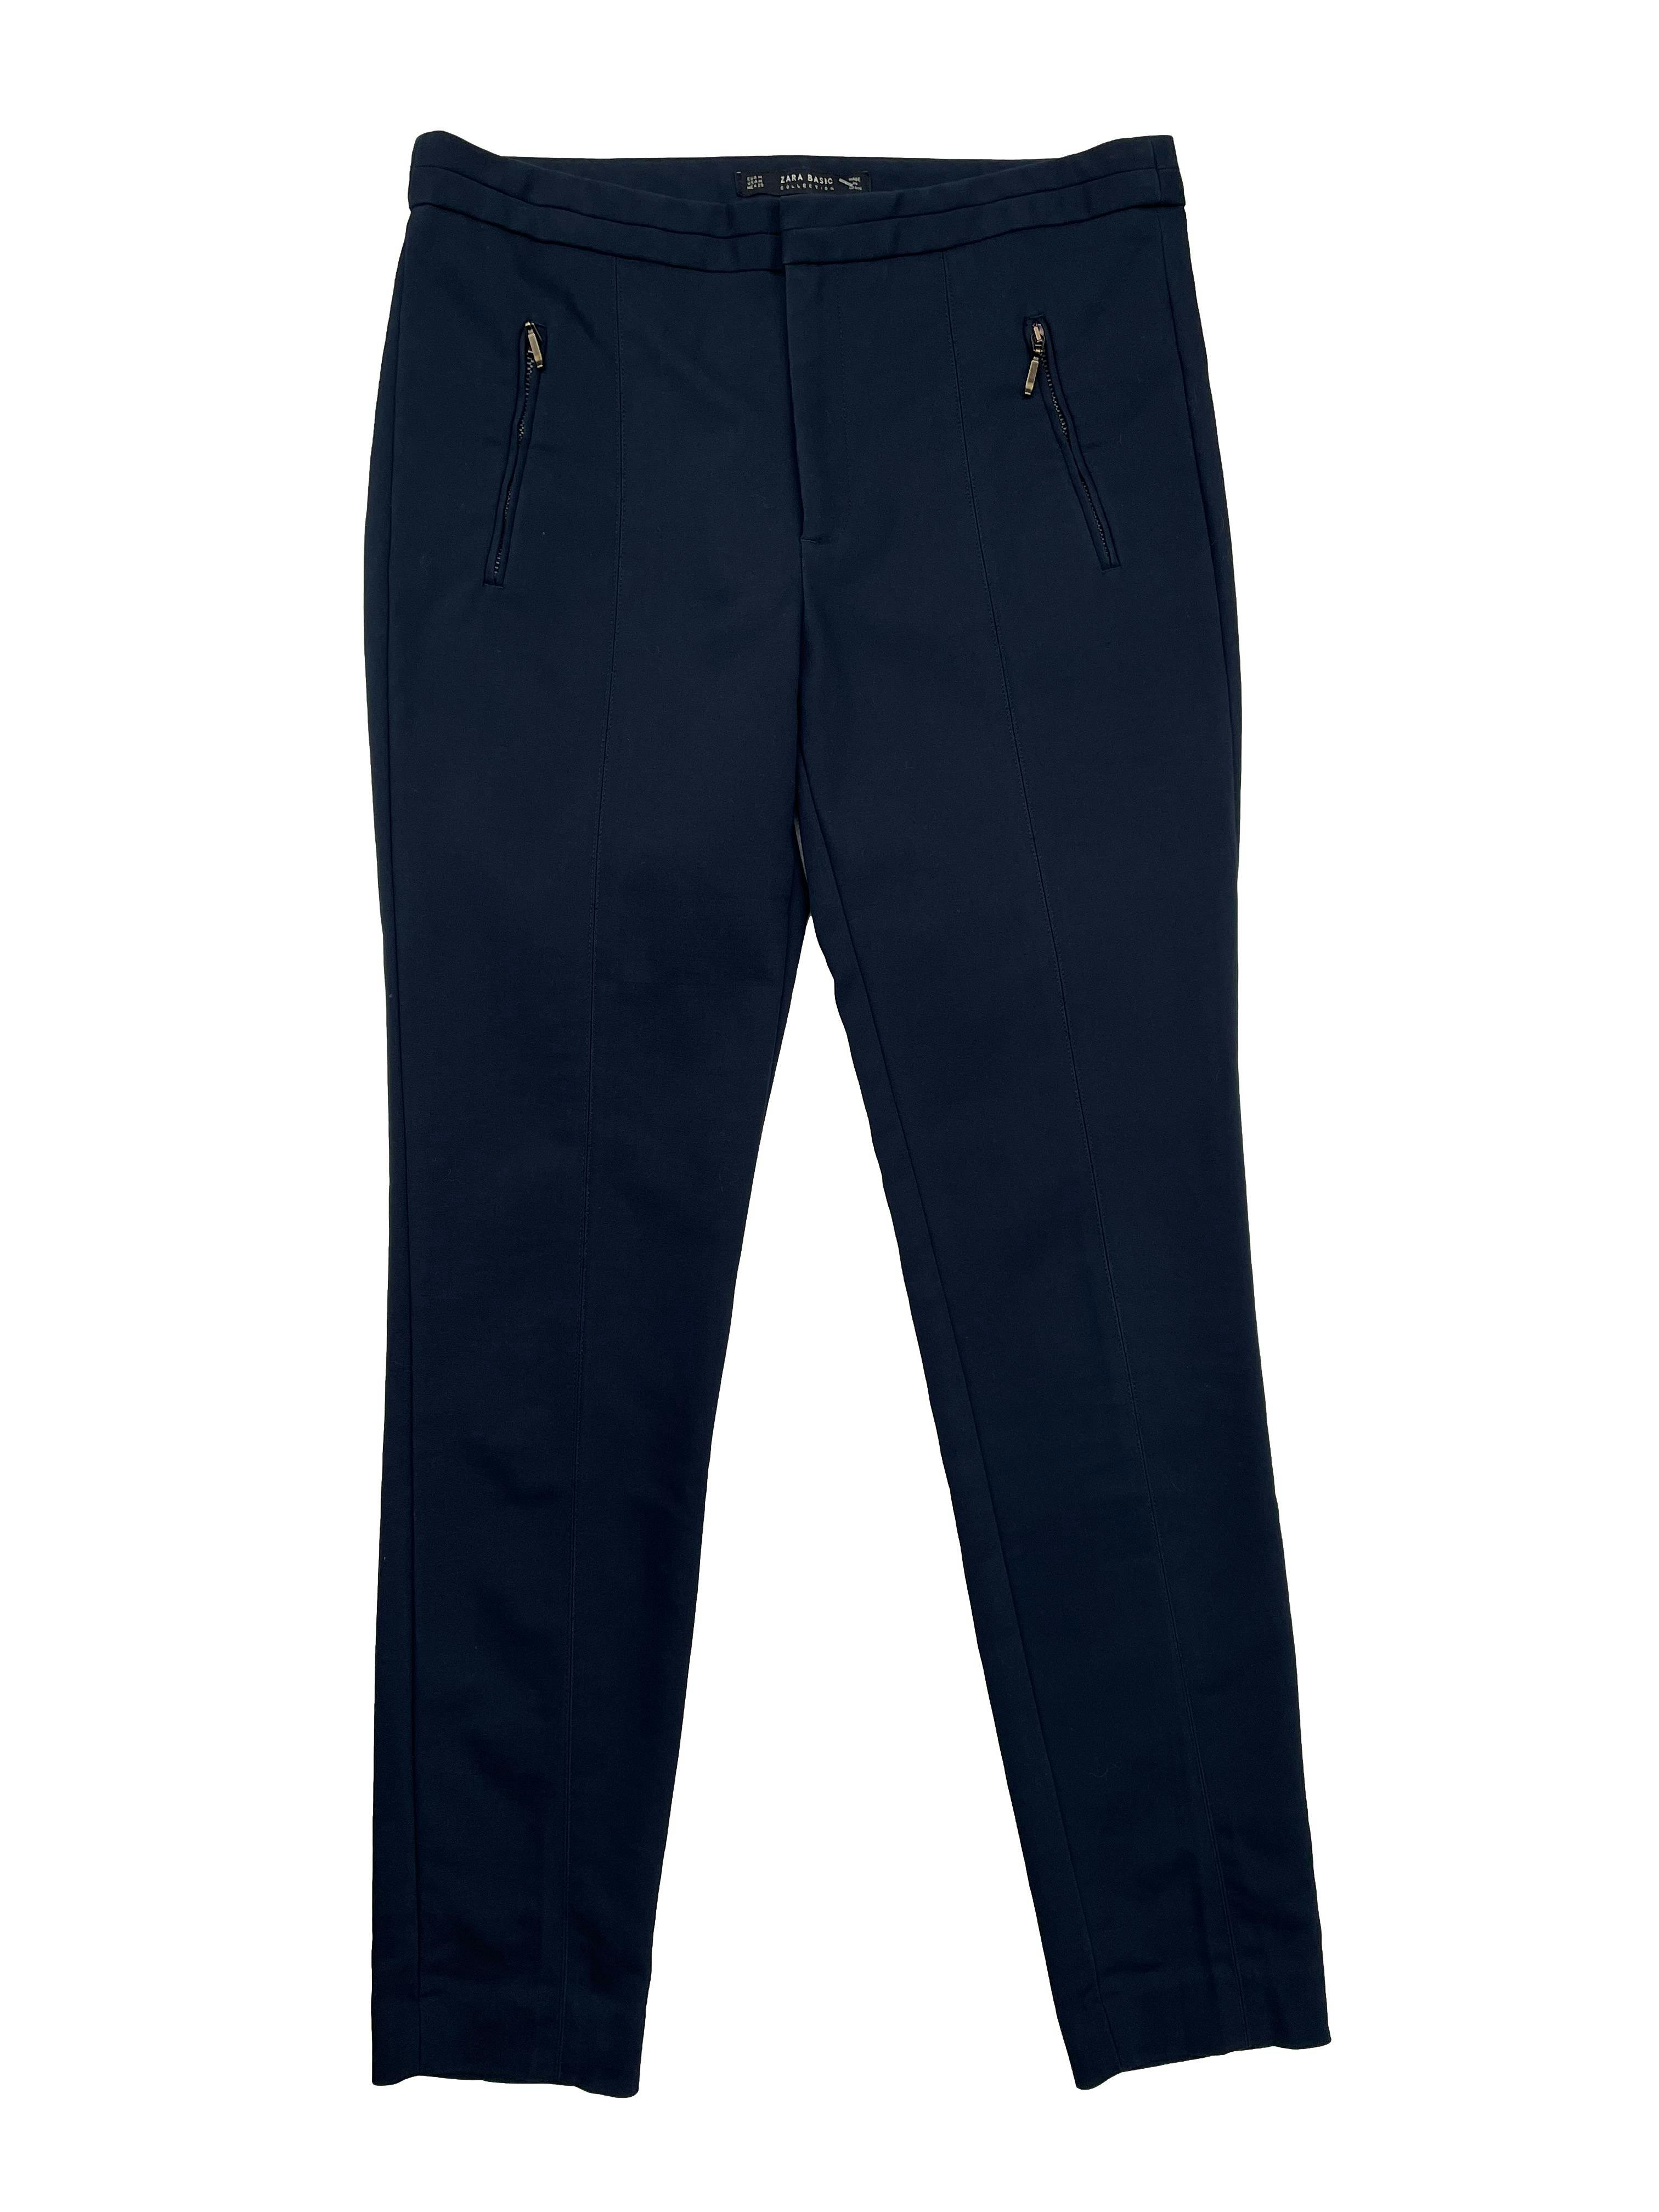 Pantalón sastre de lanilla azul marino, corte recto con tres bolsillos.  Cintura 80cm, Tiro 22cm, Largo 95cm.